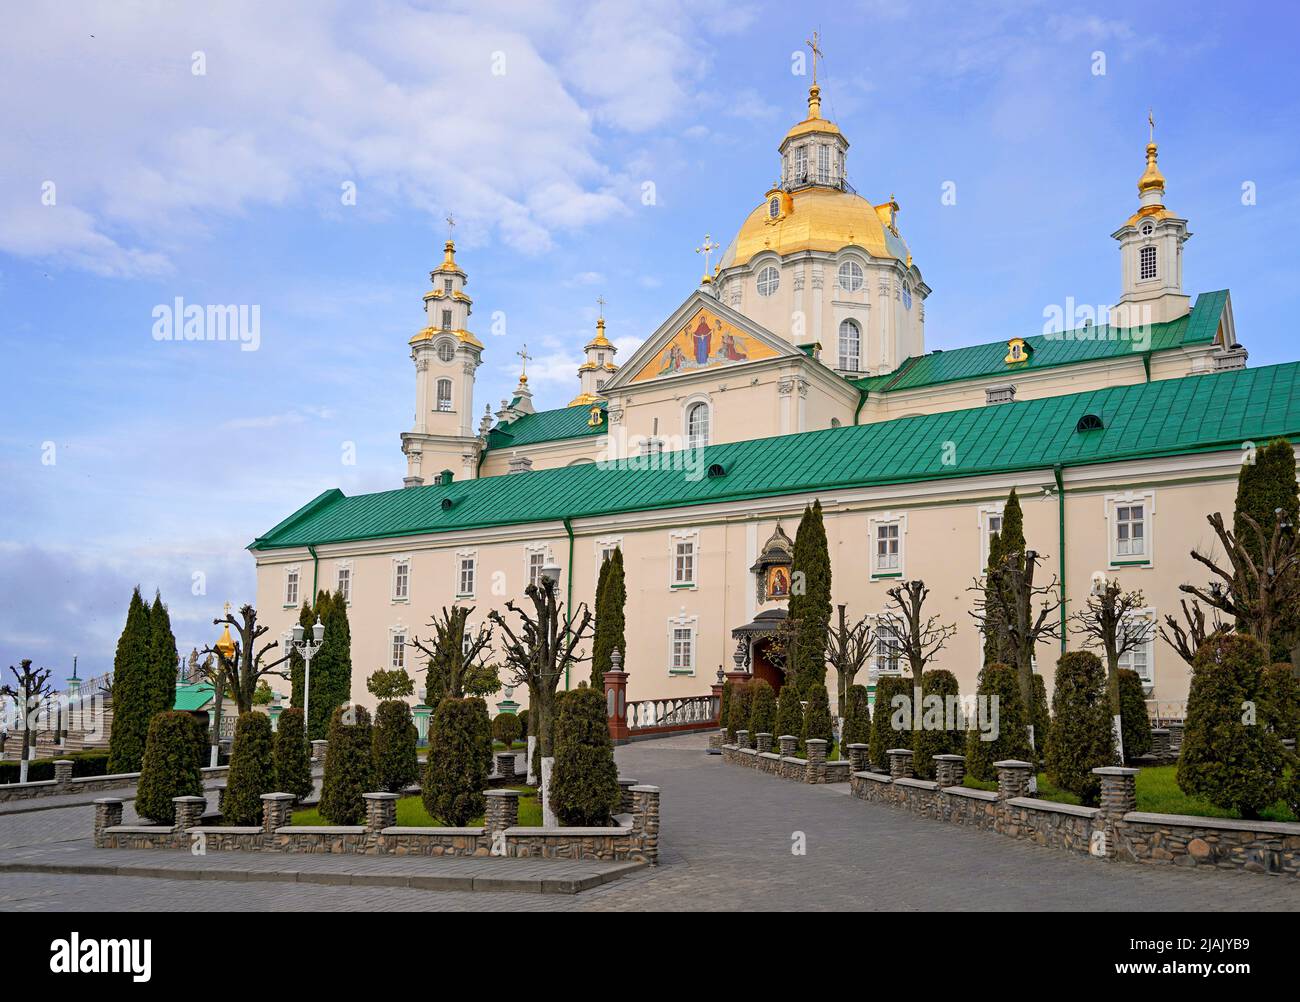 Église orthodoxe aux dômes dorés, cathédrale de la Trinité et clocher à Pochaev Lavra Pochayiv Lavra, Ukraine Banque D'Images